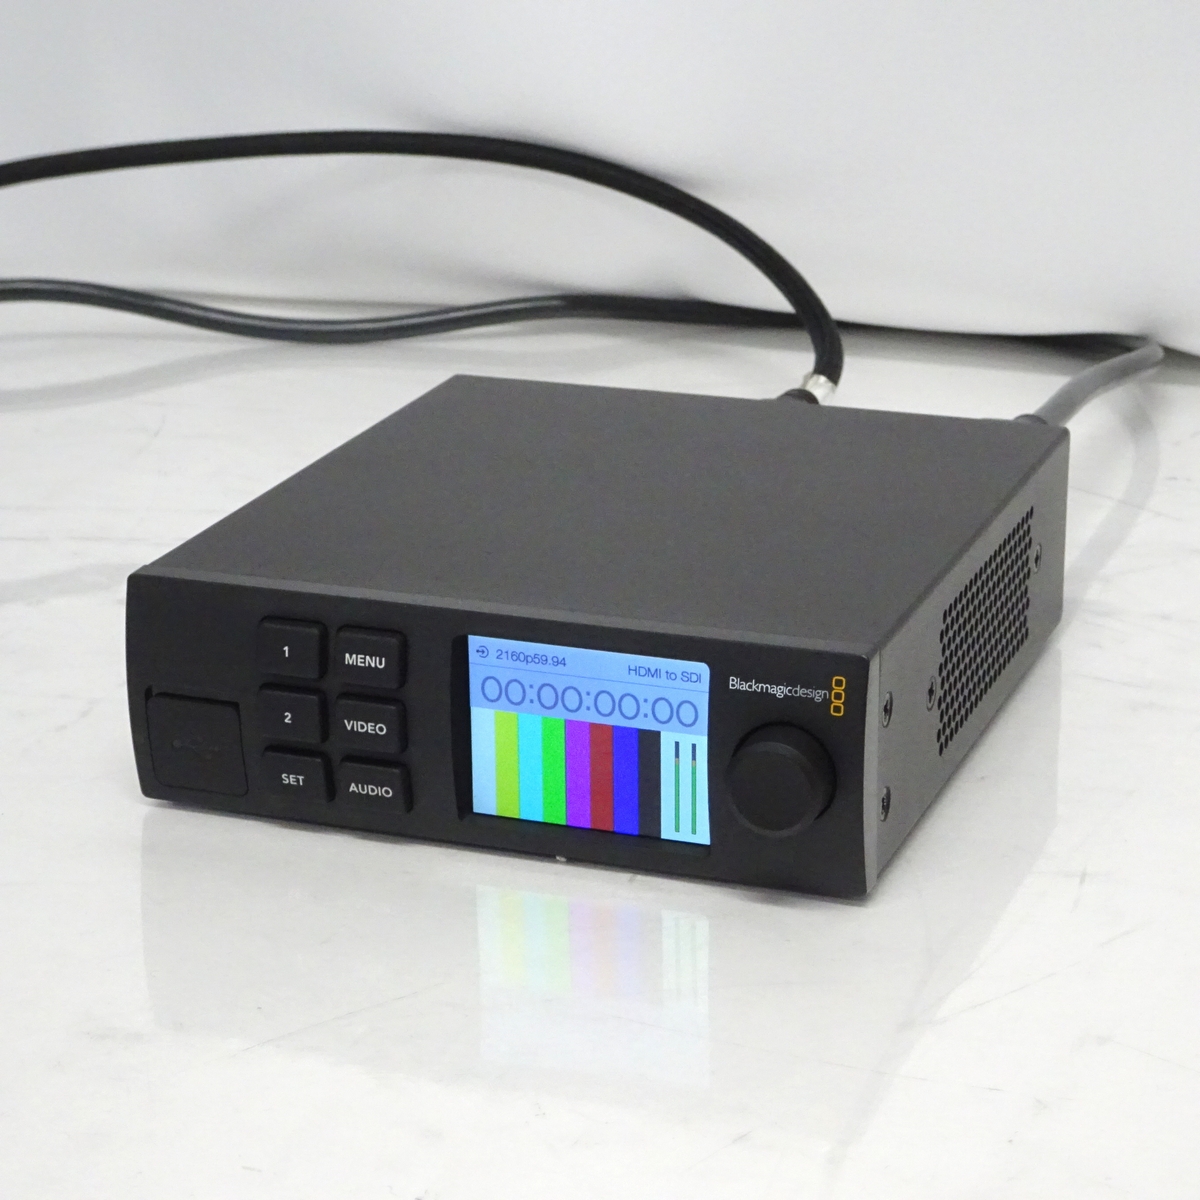 【中古】Blackmagic Design Teranex Mini HDMI to SDI 12G コンバーター Smart Panel付き【愛知発送1】